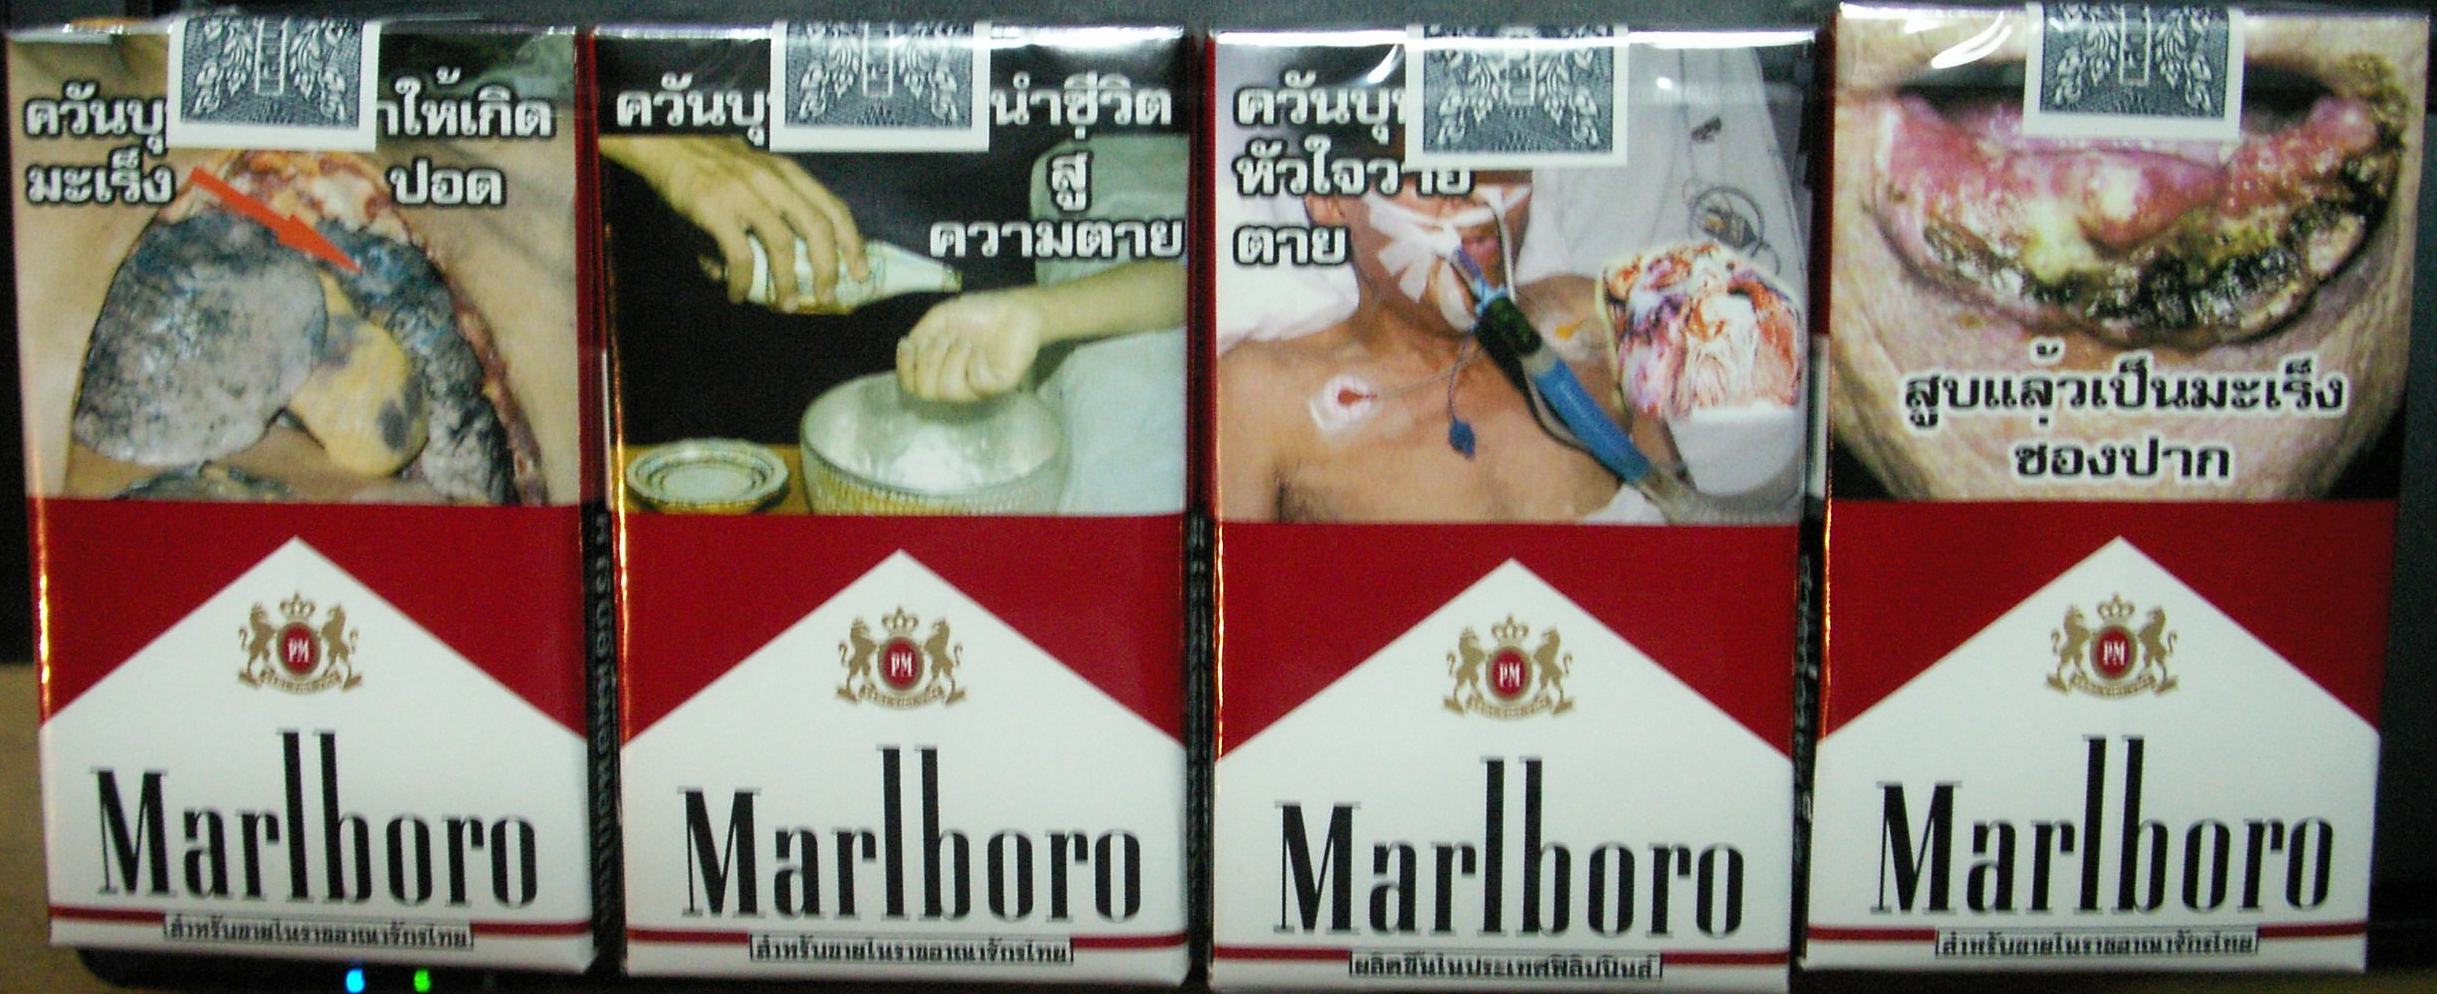 タイのタバコのケース絵柄